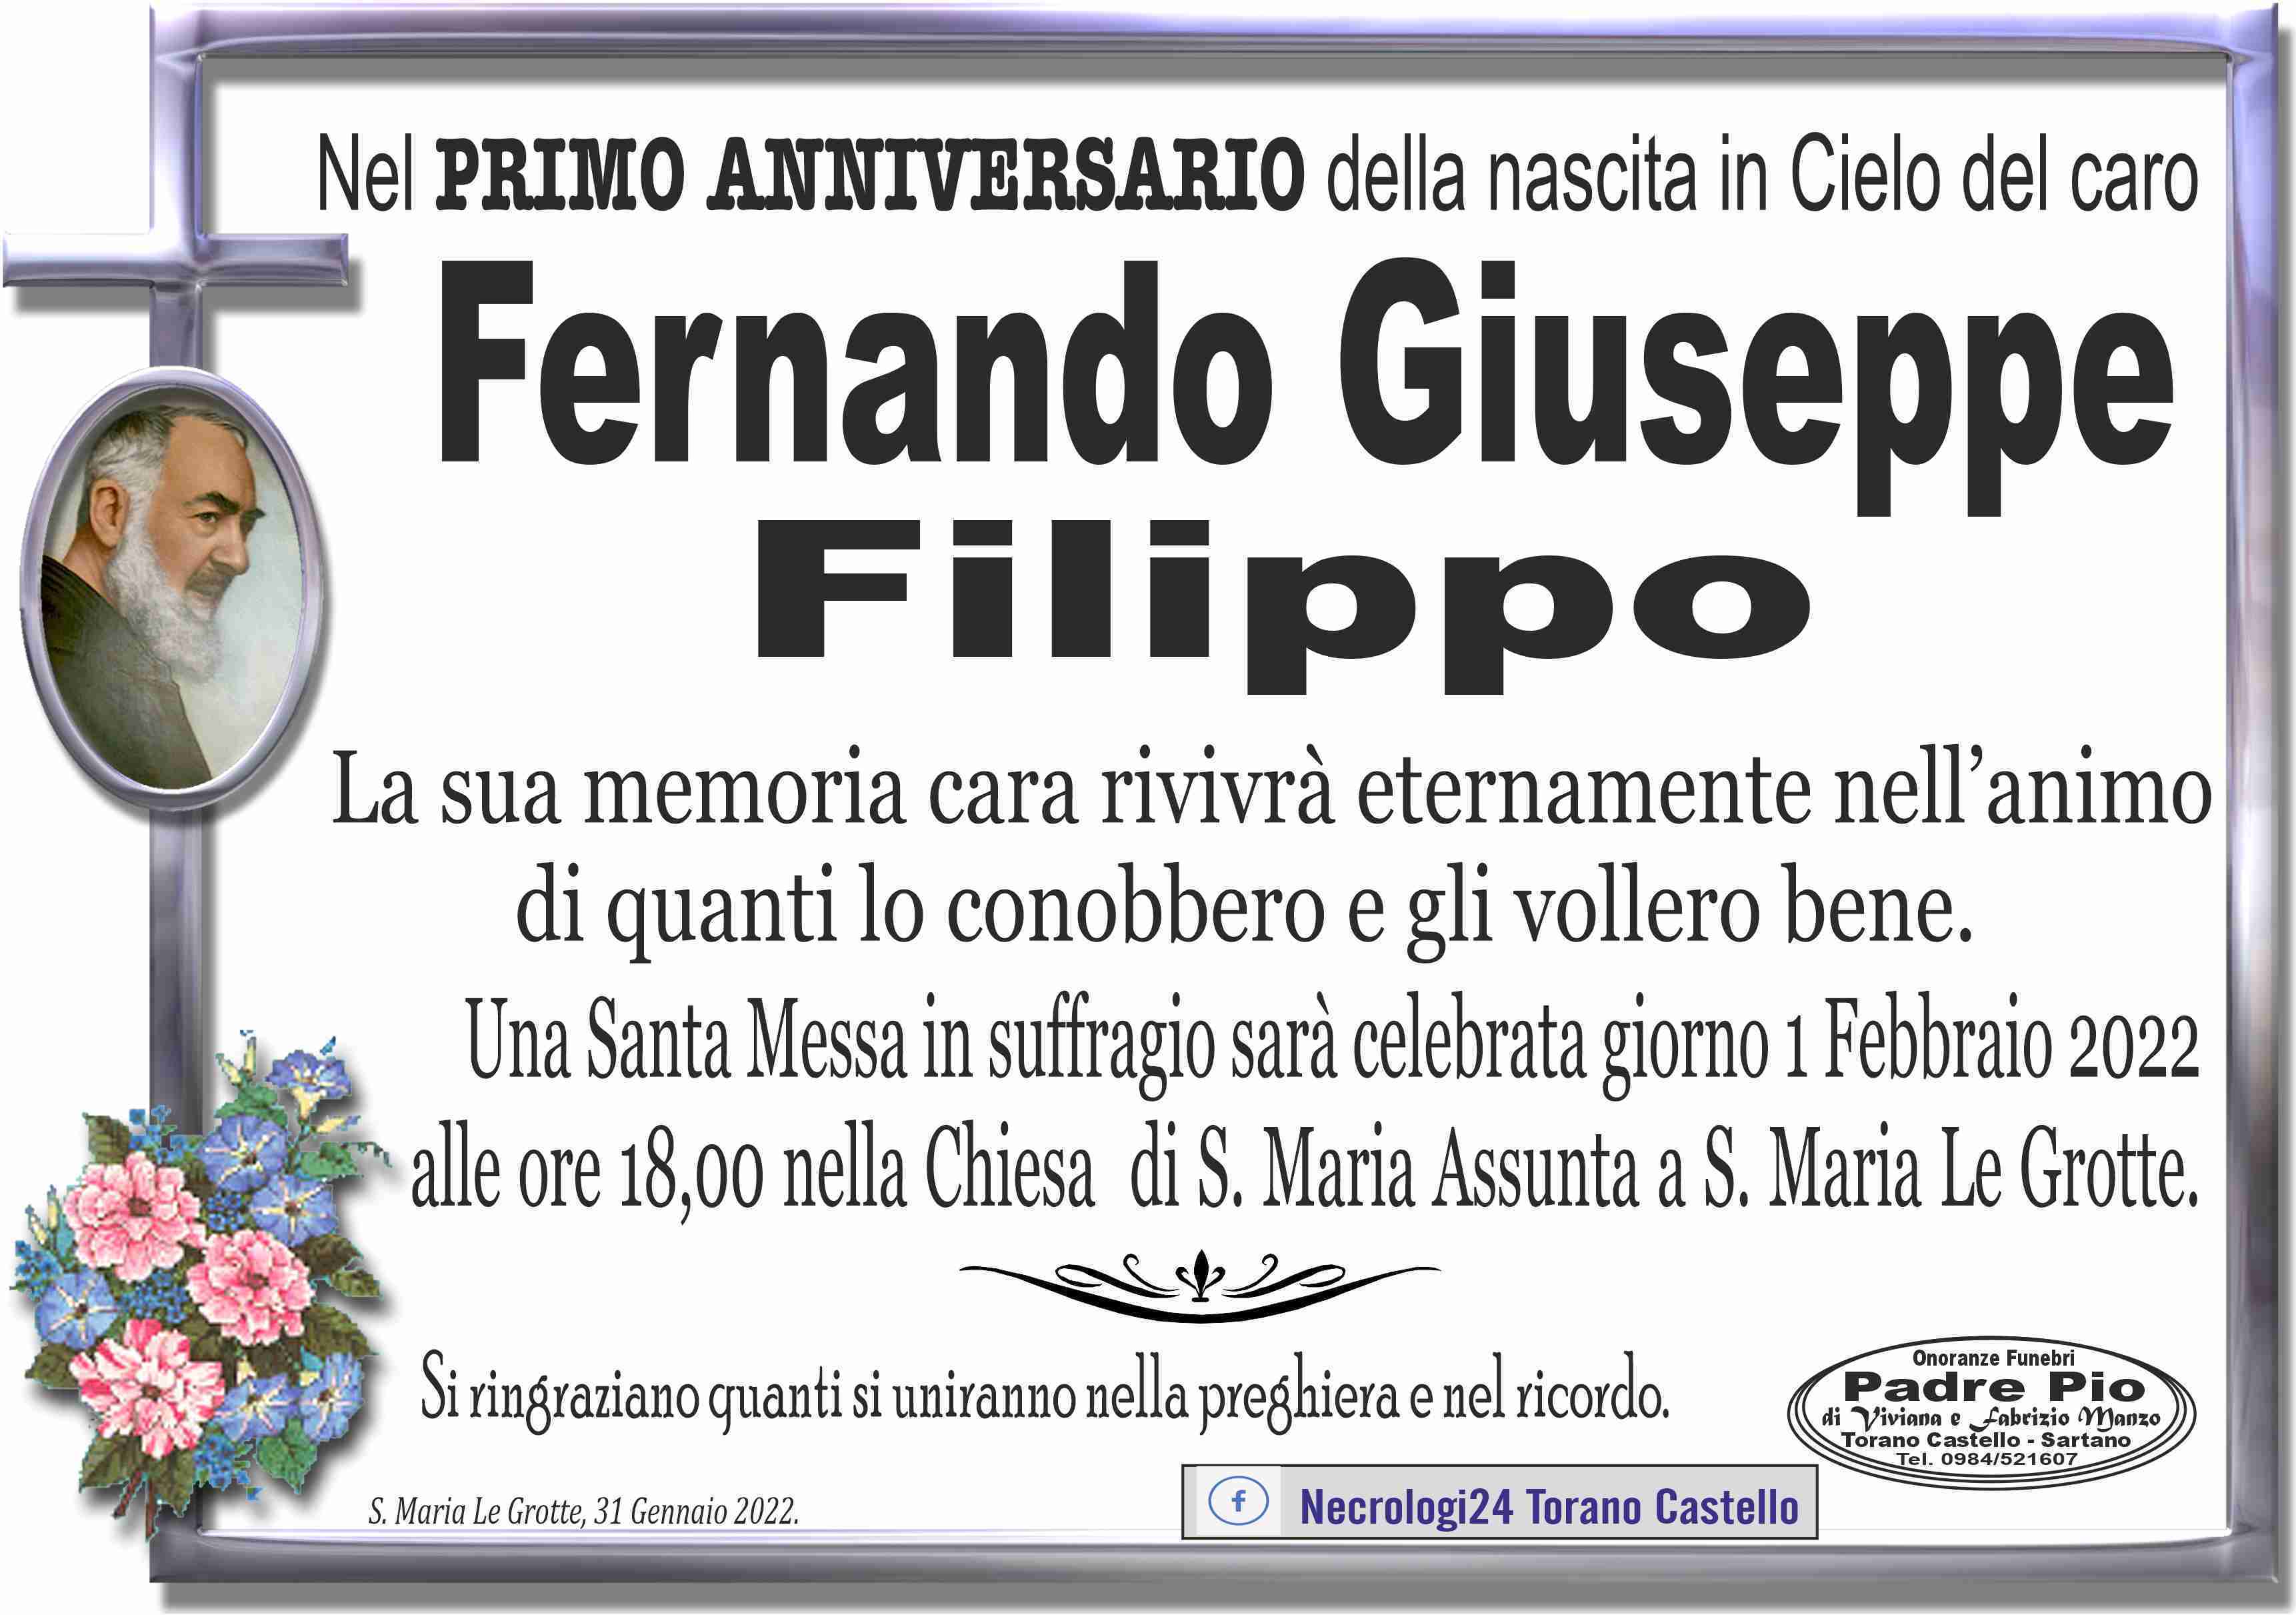 Fernando Giuseppe Filippo